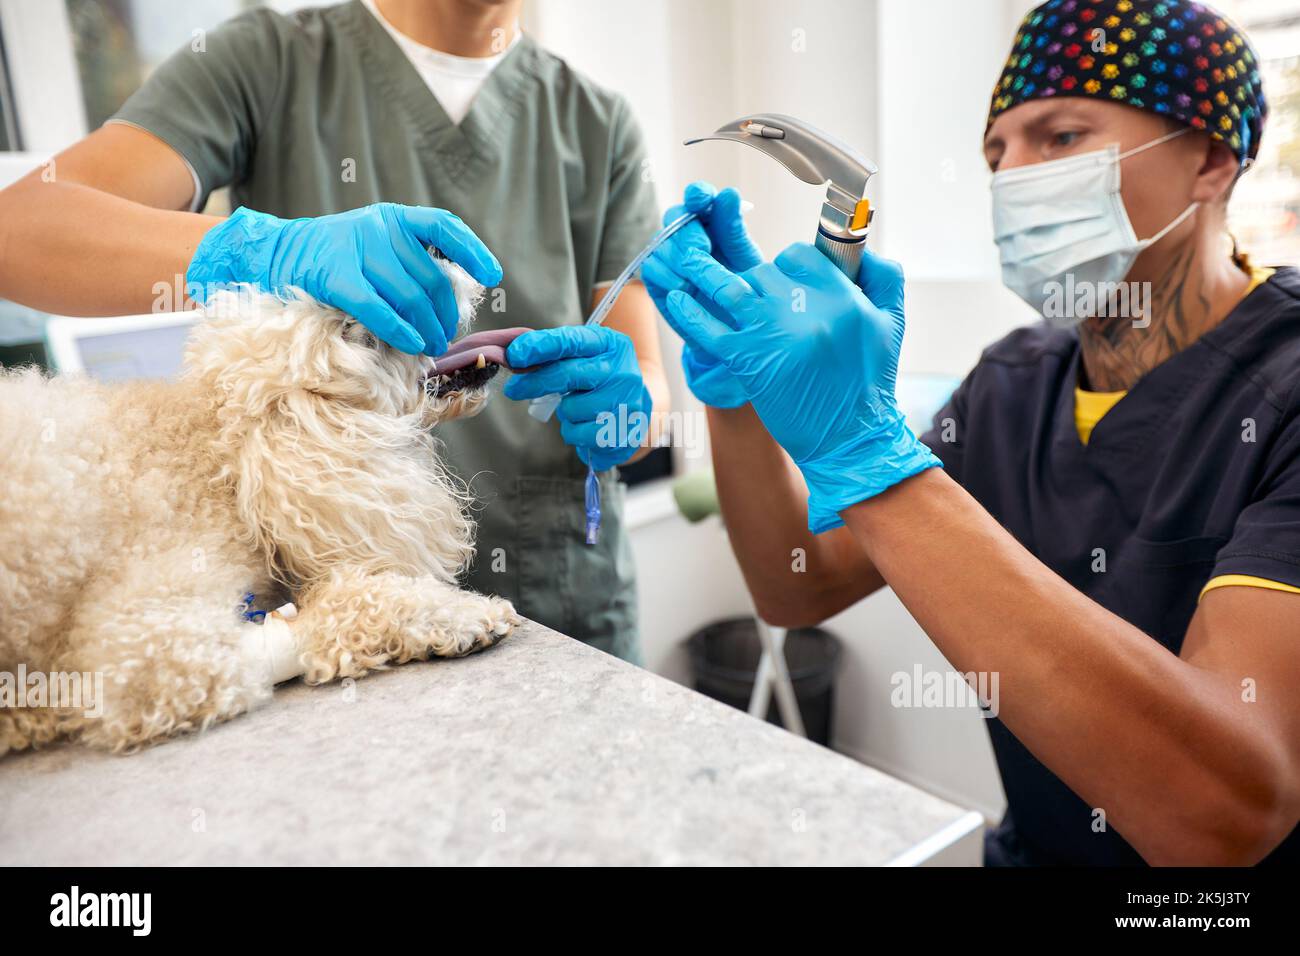 Veterinaria e cura degli animali. Dottore inserimento tubo tracheale aiutare il cane. Foto di alta qualità Foto Stock